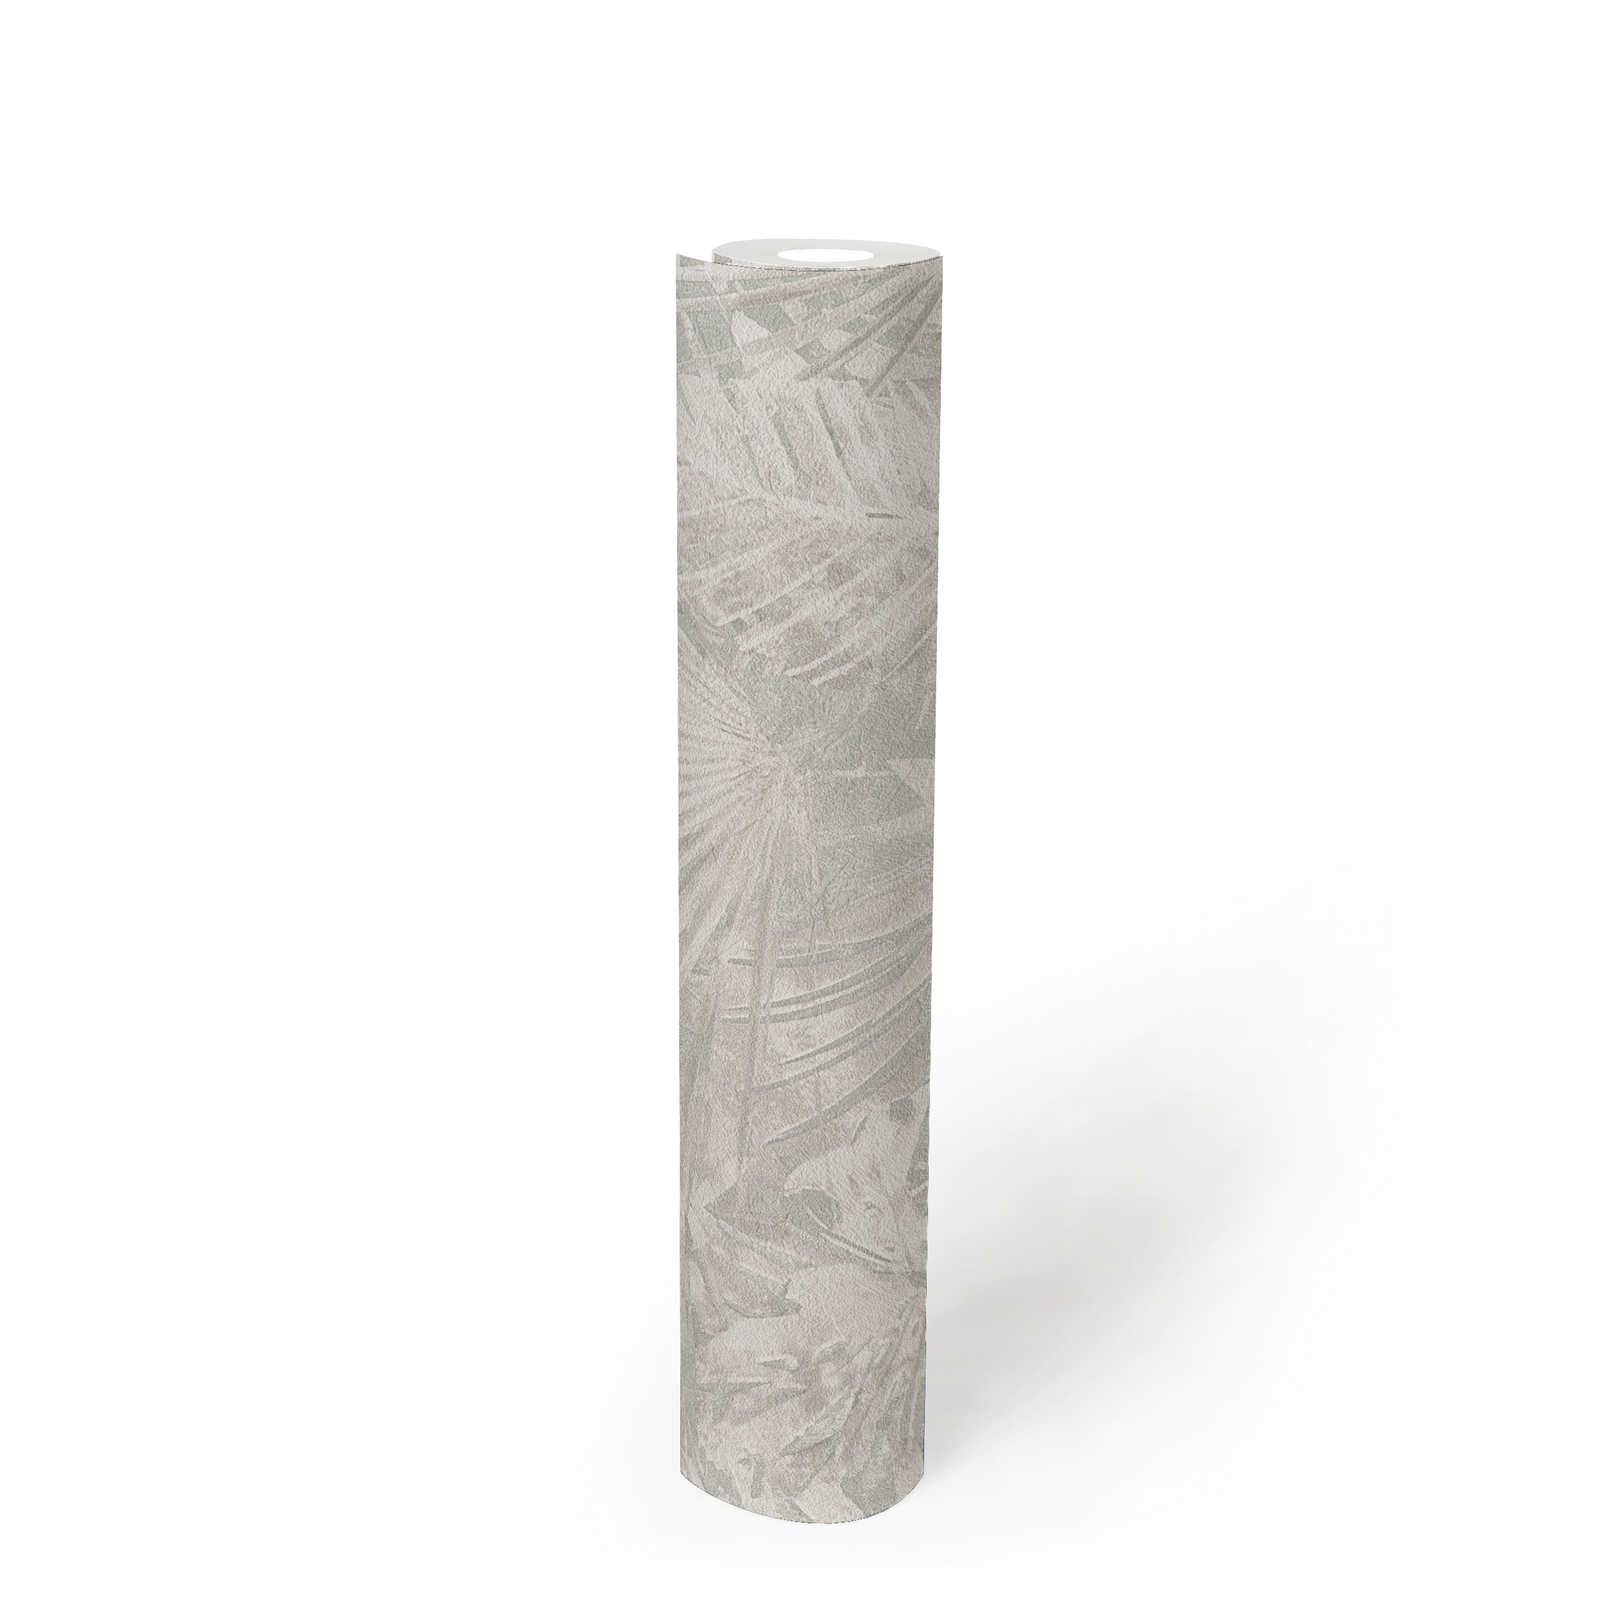             Vliestapete mit Blättermotiv PVC-frei – Grau, Beige, Weiß
        